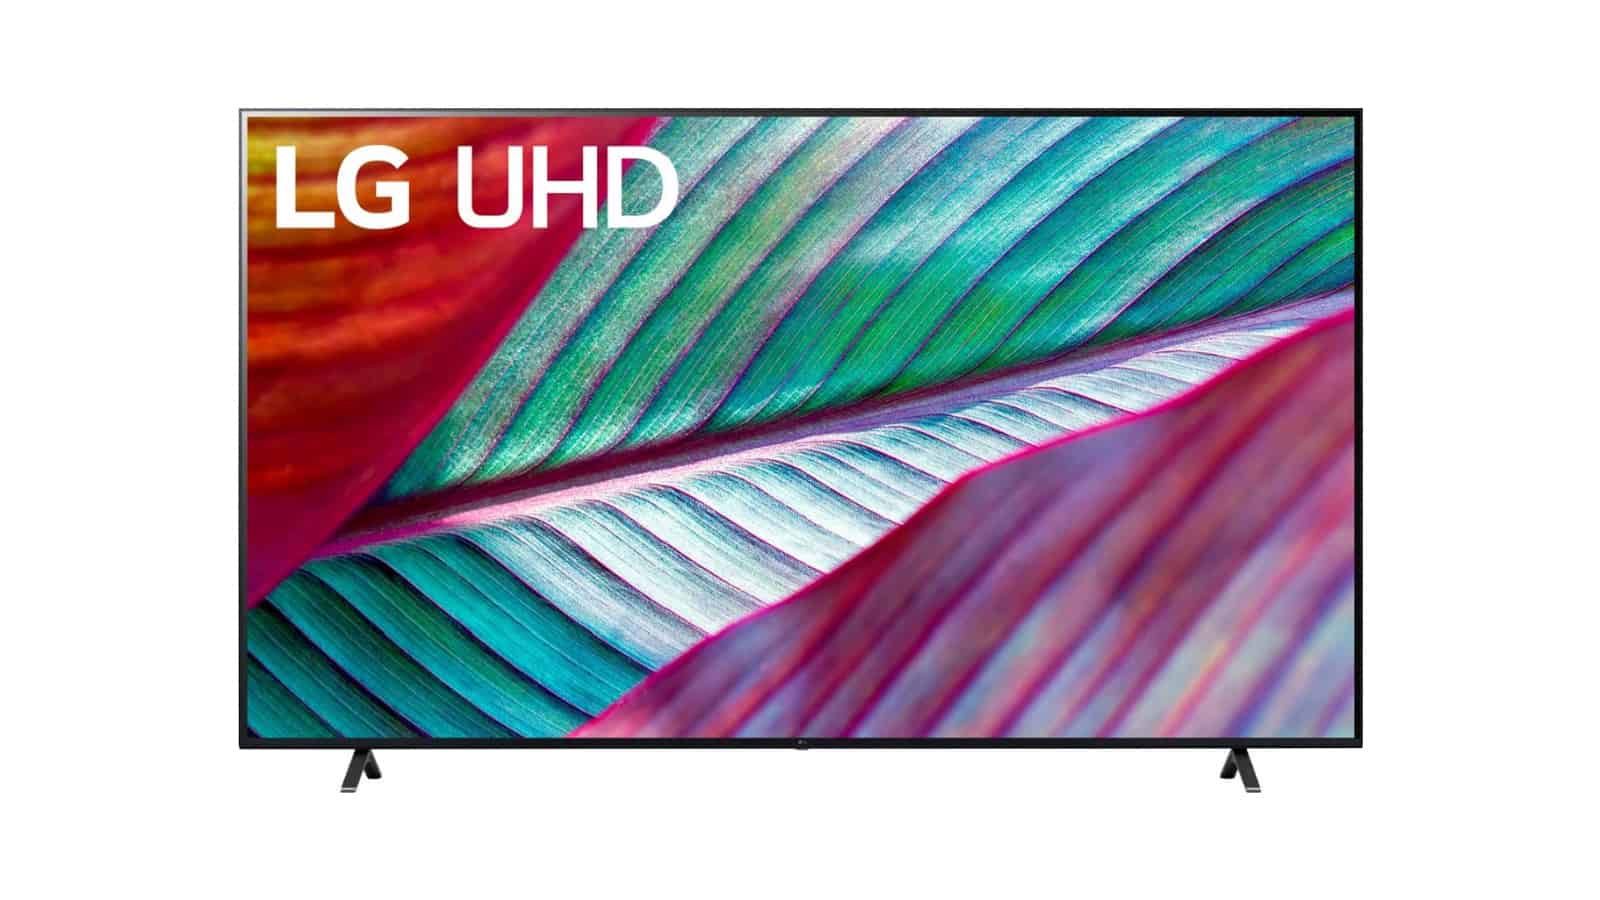 El enorme televisor 4K de 86 pulgadas de LG baja a 800 dólares